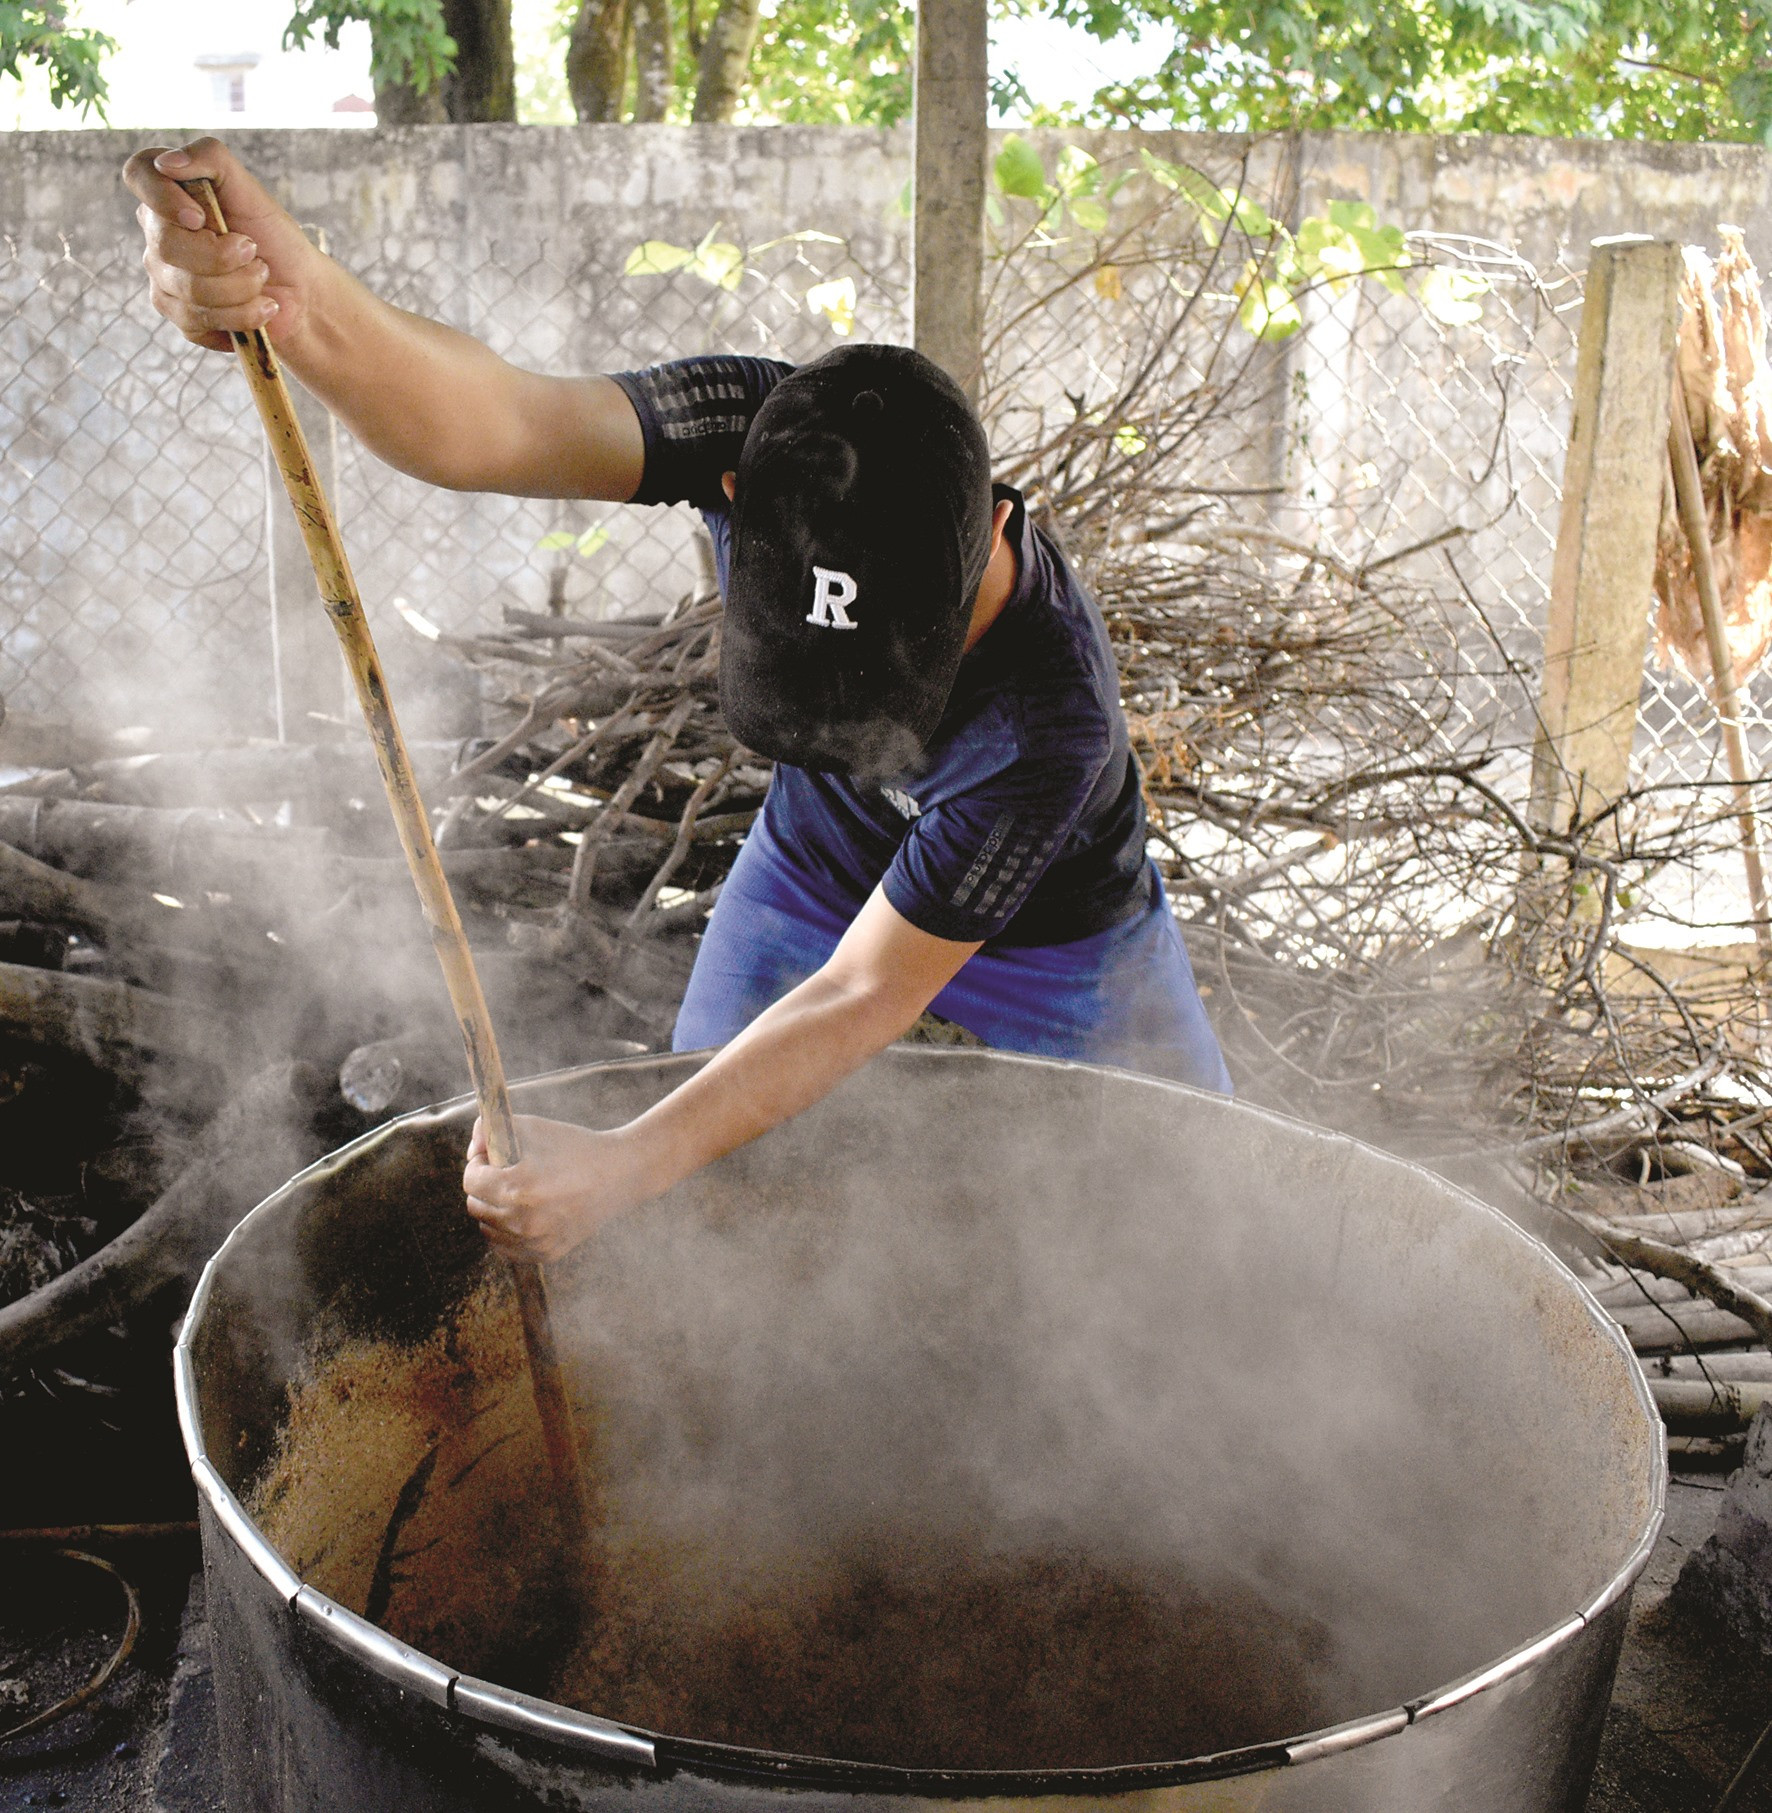 Đậu phụng khô sau khi được xay thành bột sẽ cho vào nồi để nấu chín.